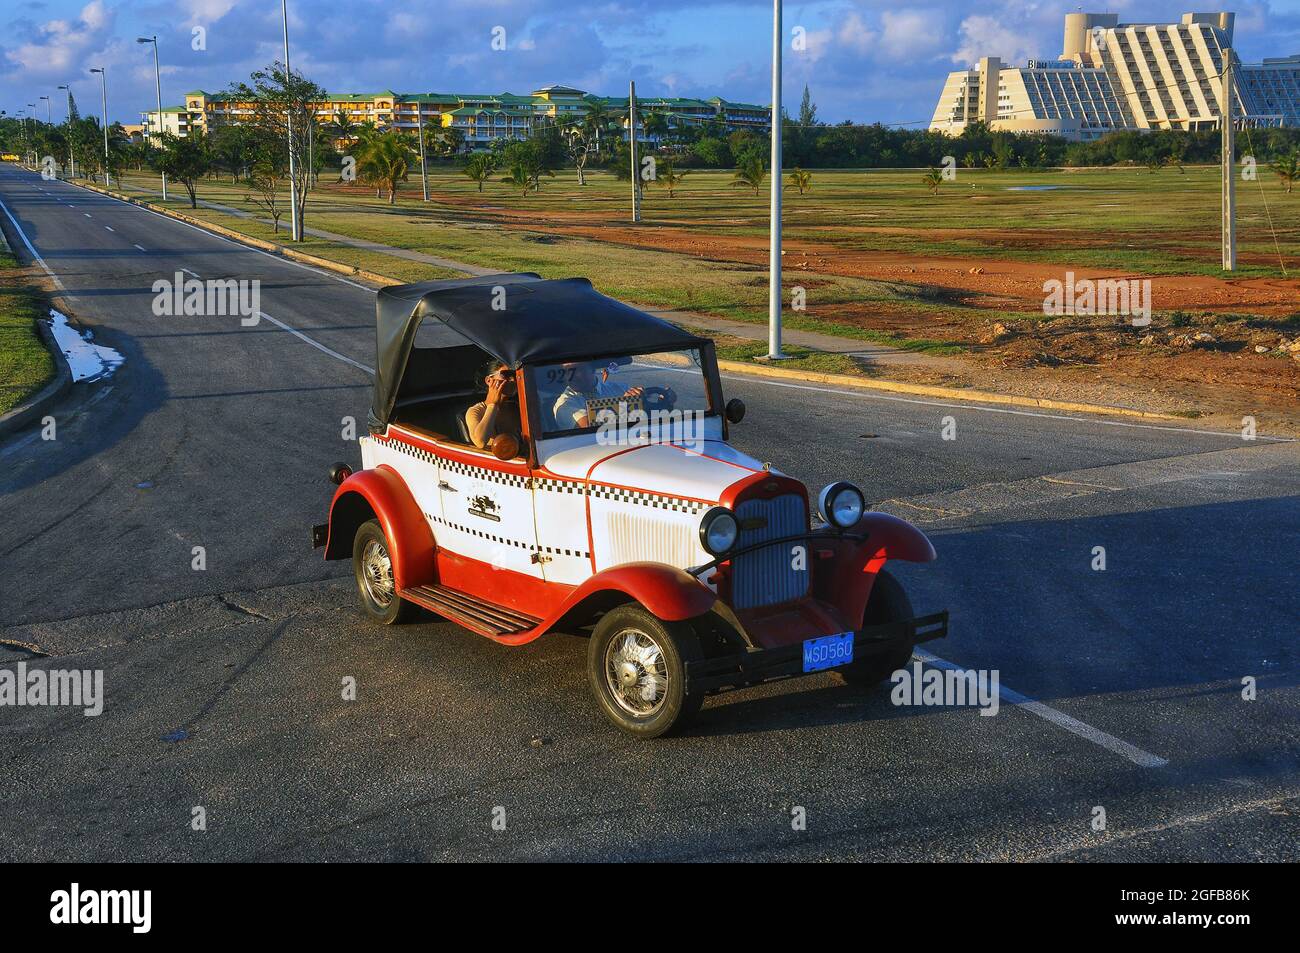 Varadero, Kuba - 3. Februar 2010: Vintage-Taxi fährt aus Melia Las Antillas Resort. Das Blau Varadero Resort befindet sich auf der rechten Seite. Stockfoto